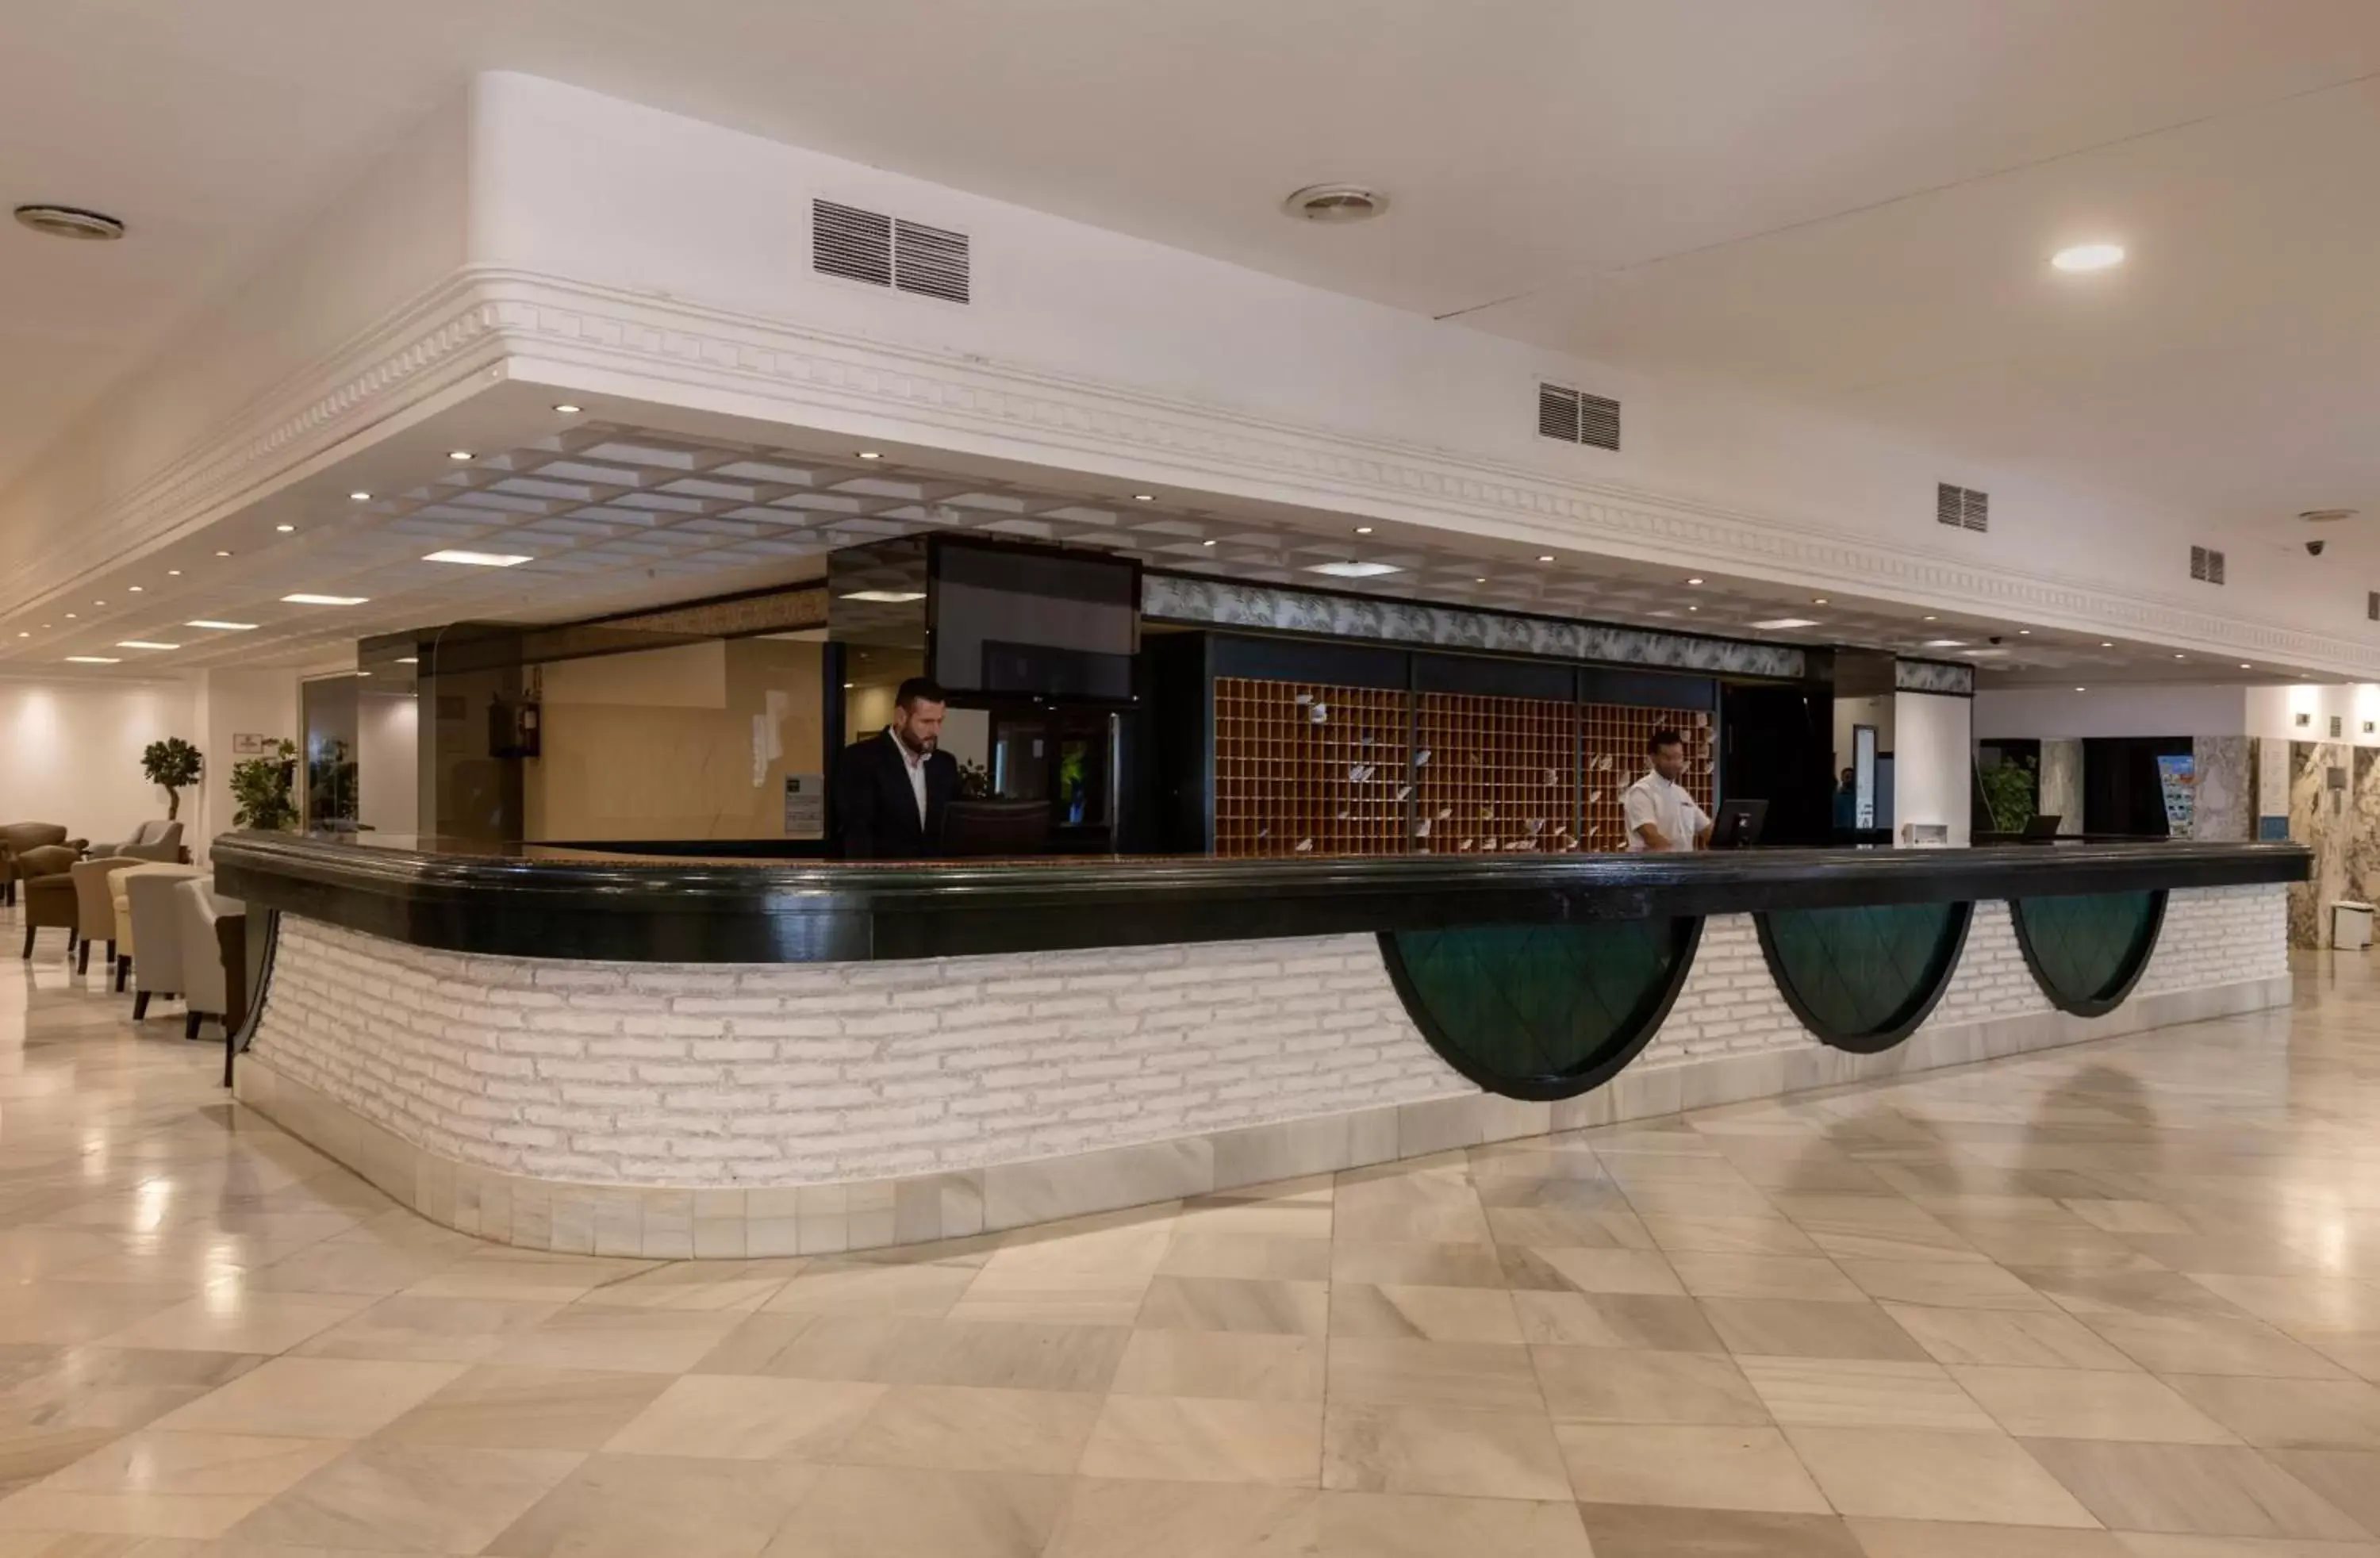 Lobby or reception, Lobby/Reception in Las Palmeras Affiliated by FERGUS